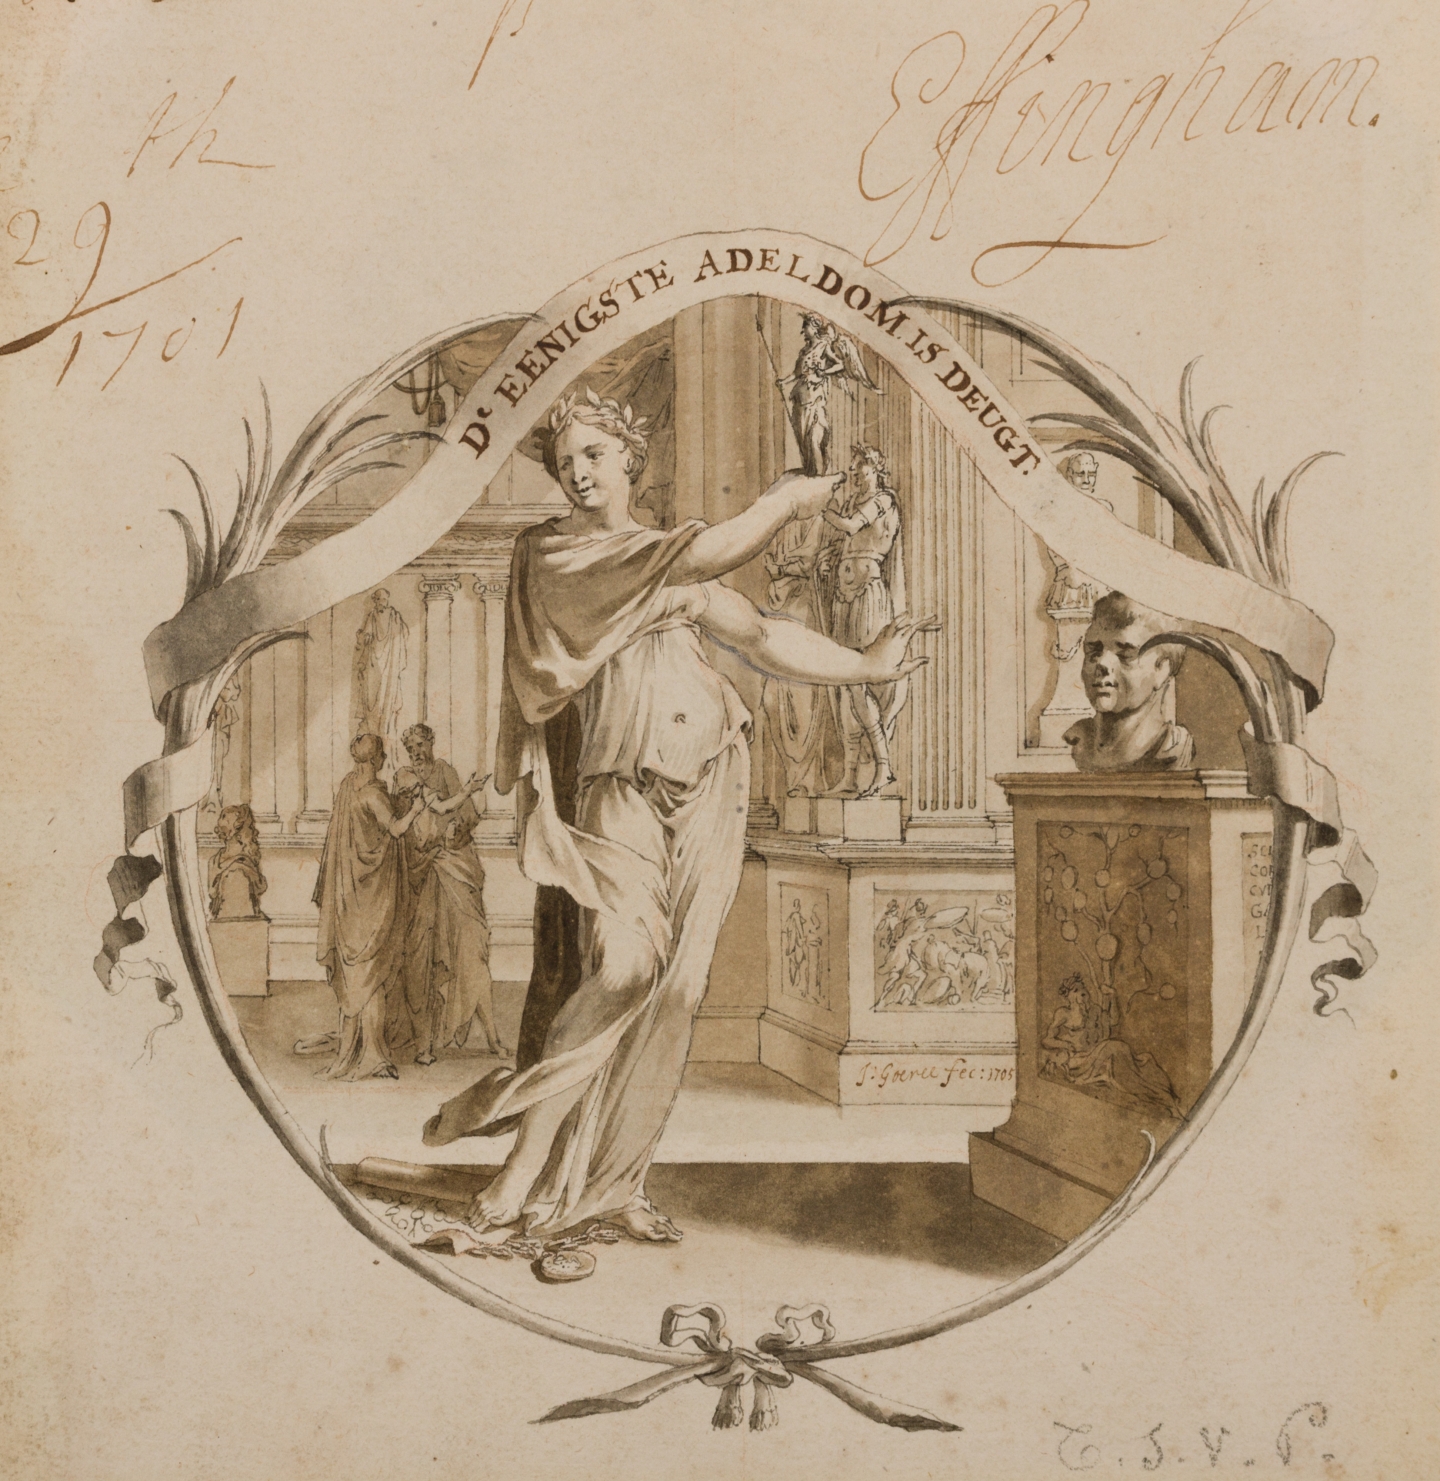 Jan Goeree (Middelburg 1670-1731 Amsterdam) Two emblem designs; D'eenigste adeldom is deugt (recto), Waakt en roept (verso)